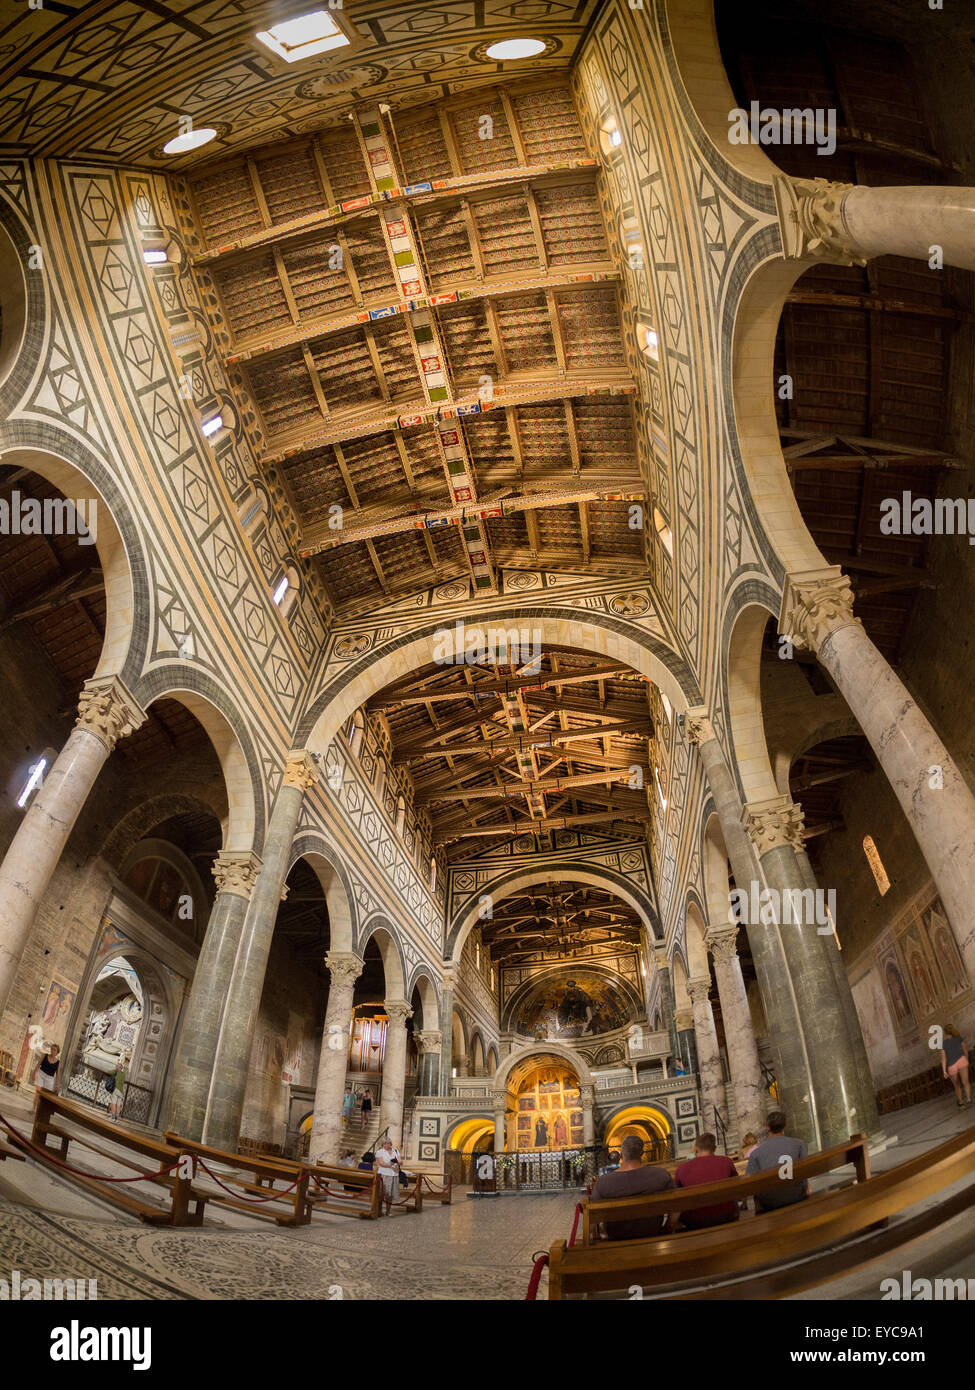 Interior of San Miniato al Monte. Florence, Italy. Stock Photo